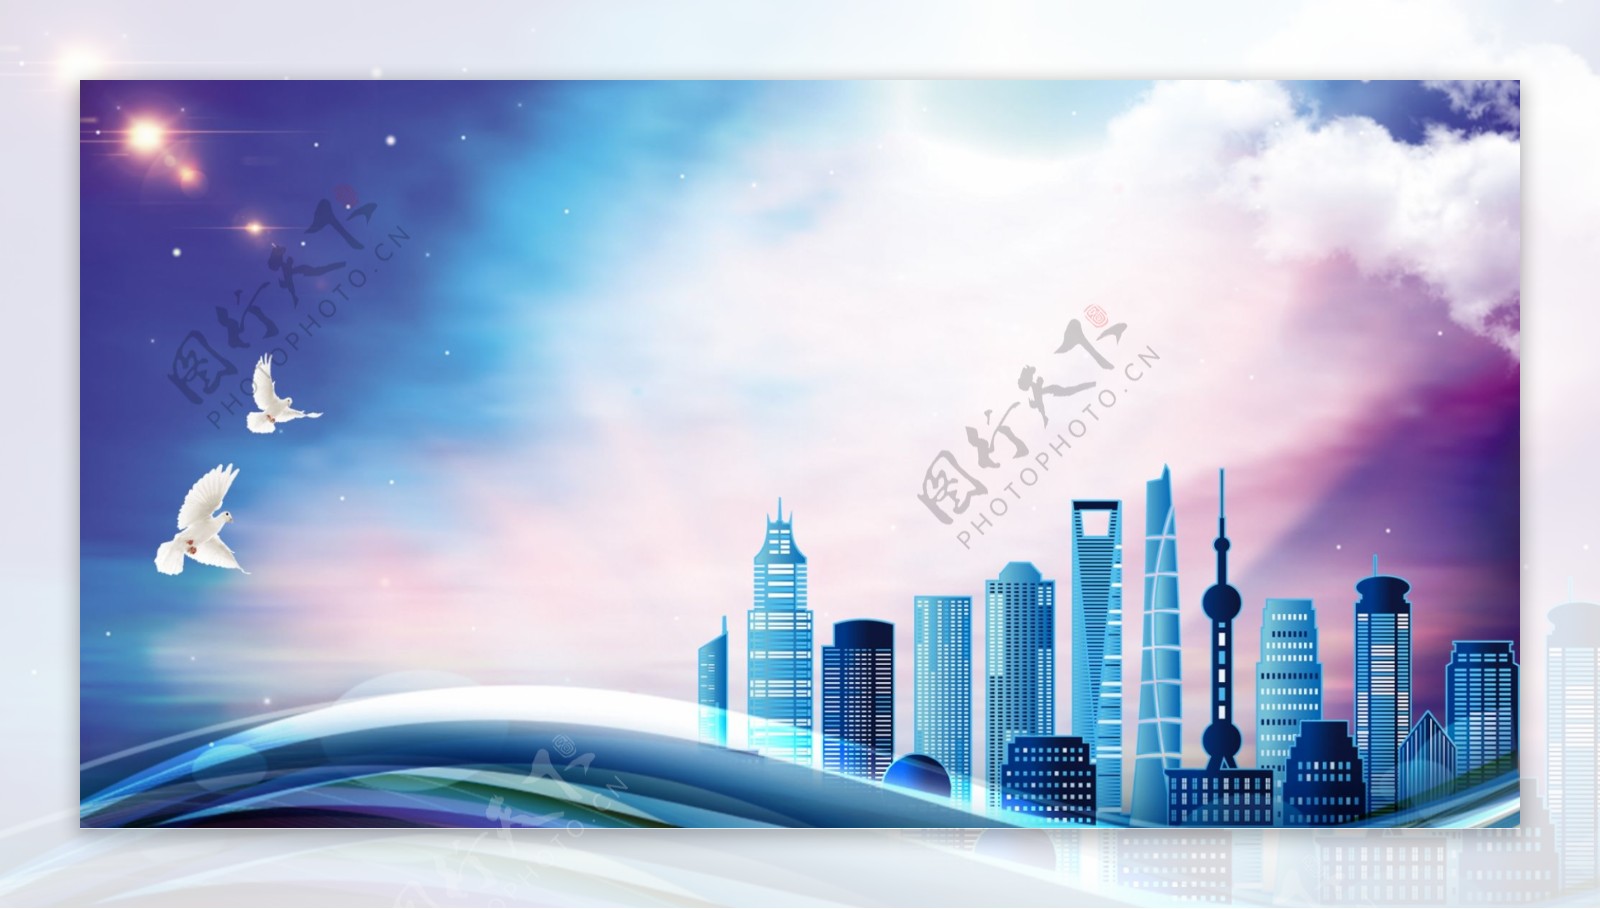 上海进口博览会大气海报